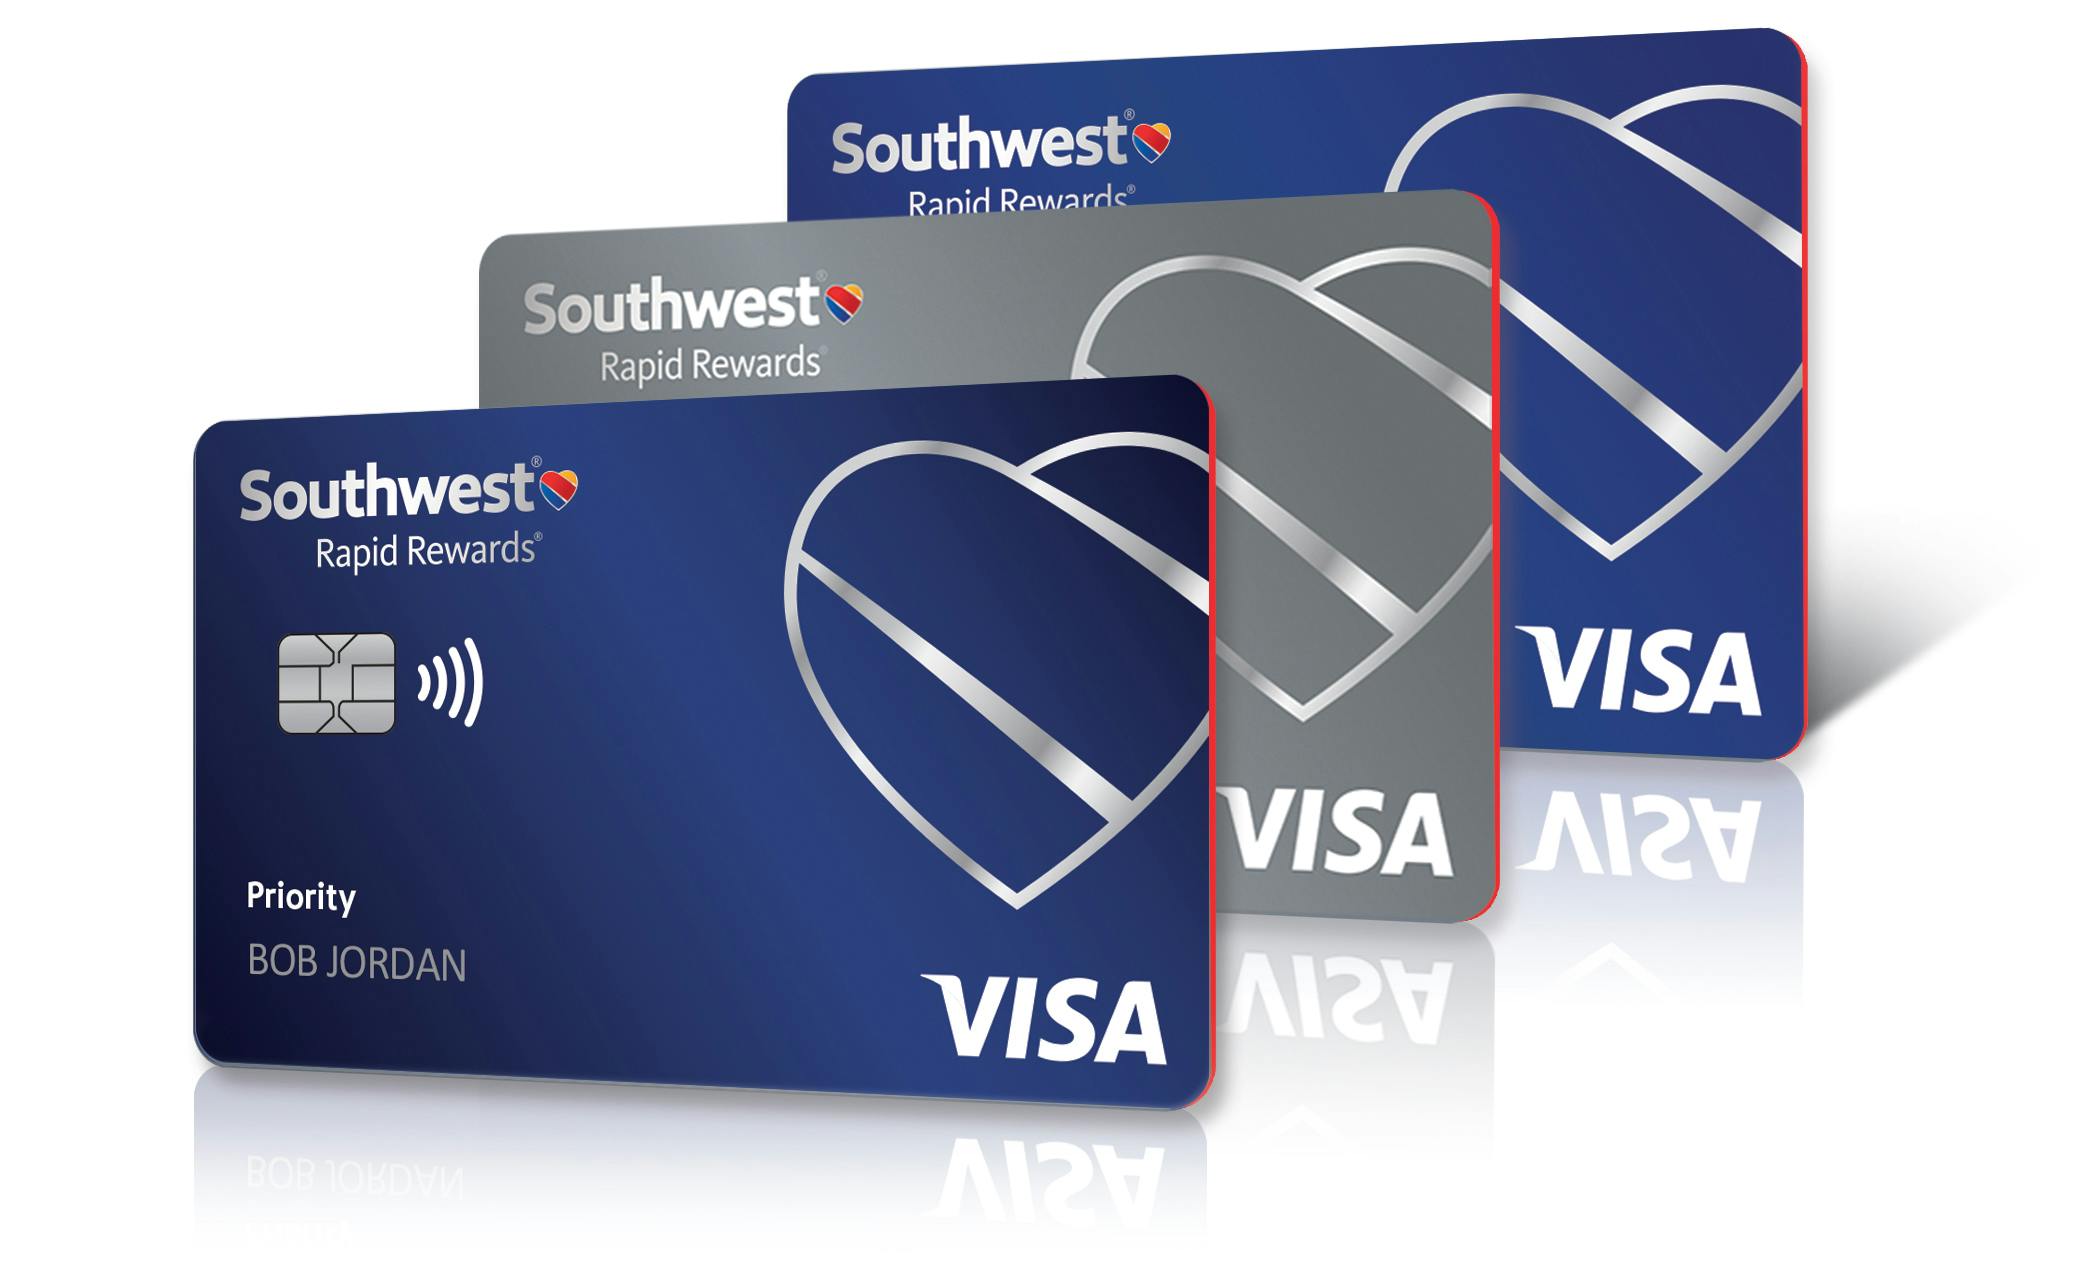 Southwest Airline Rapid Rewards Visa cards